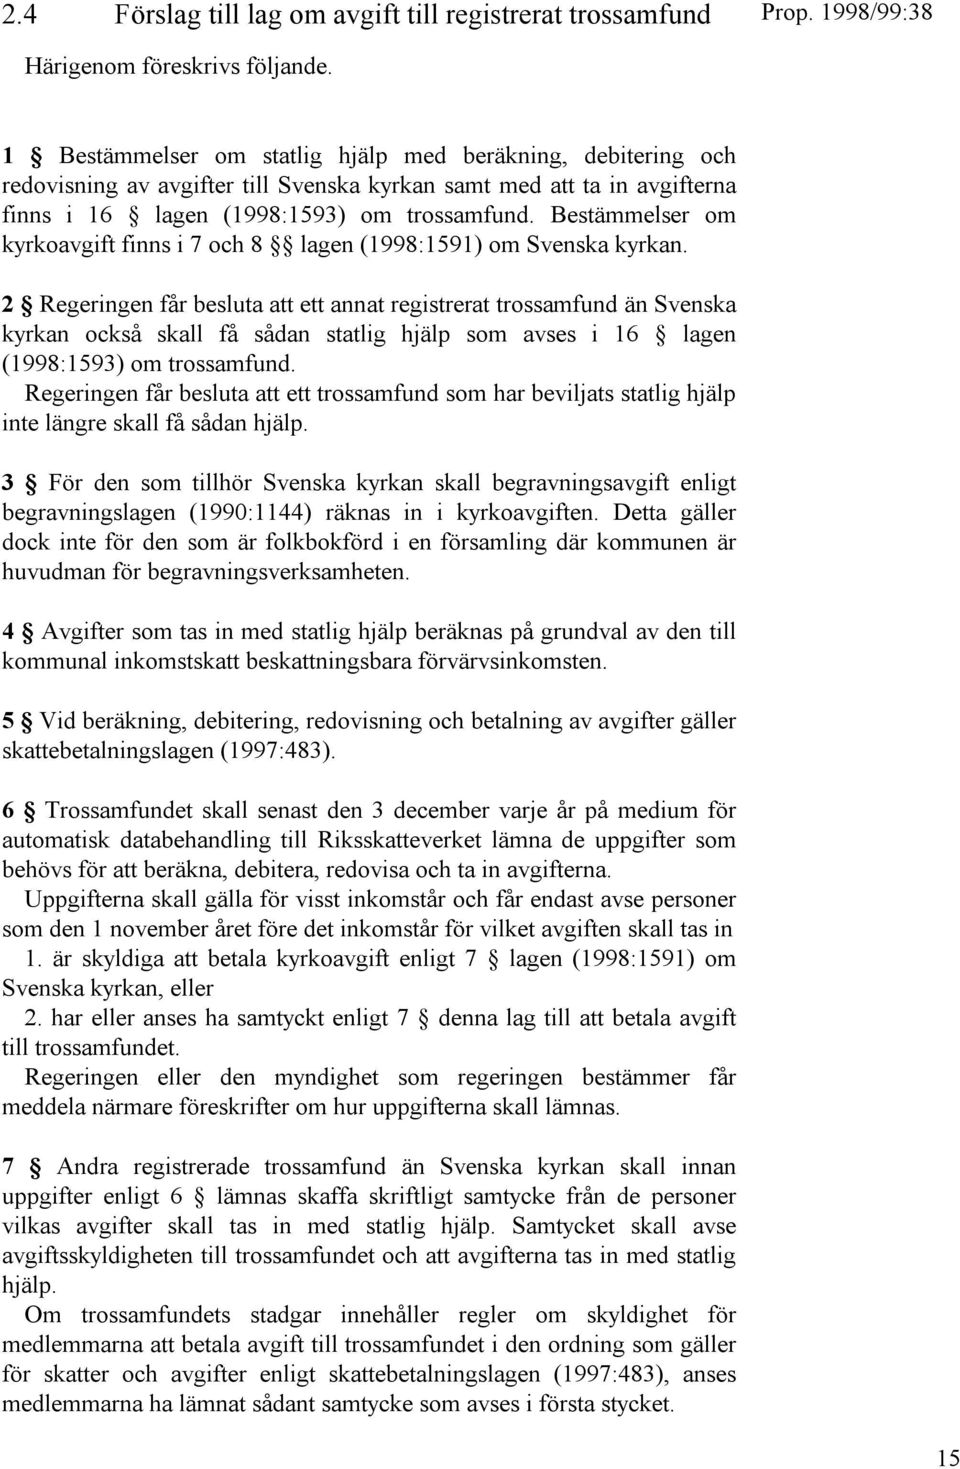 Bestämmelser om kyrkoavgift finns i 7 och 8 lagen (1998:1591) om Svenska kyrkan.